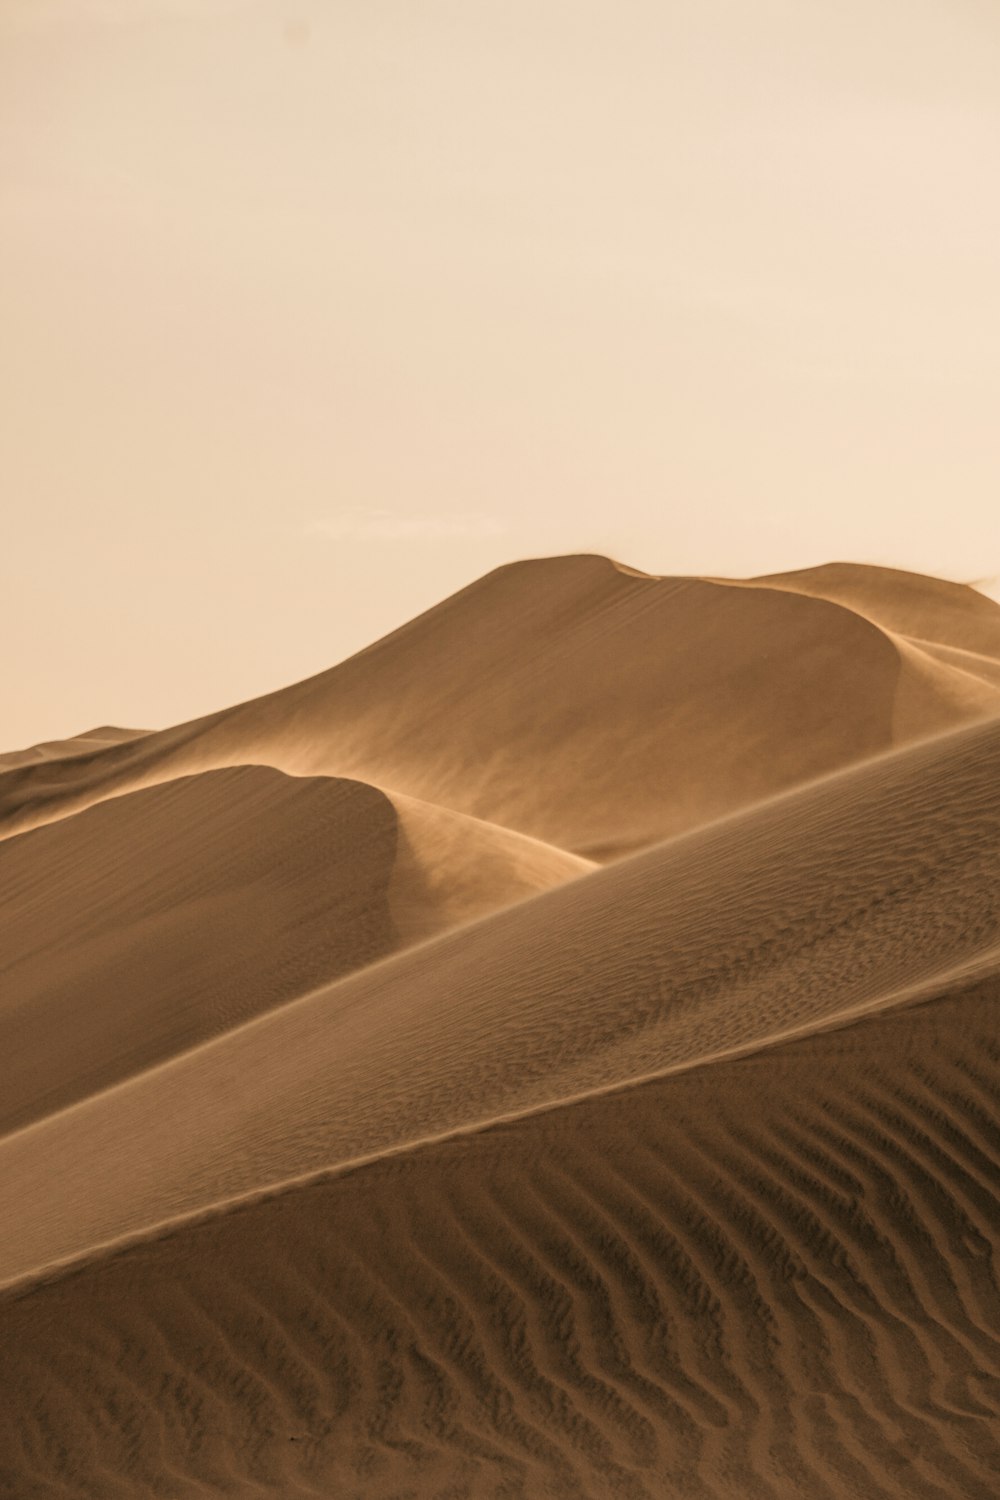 brown sand dunes under white sky